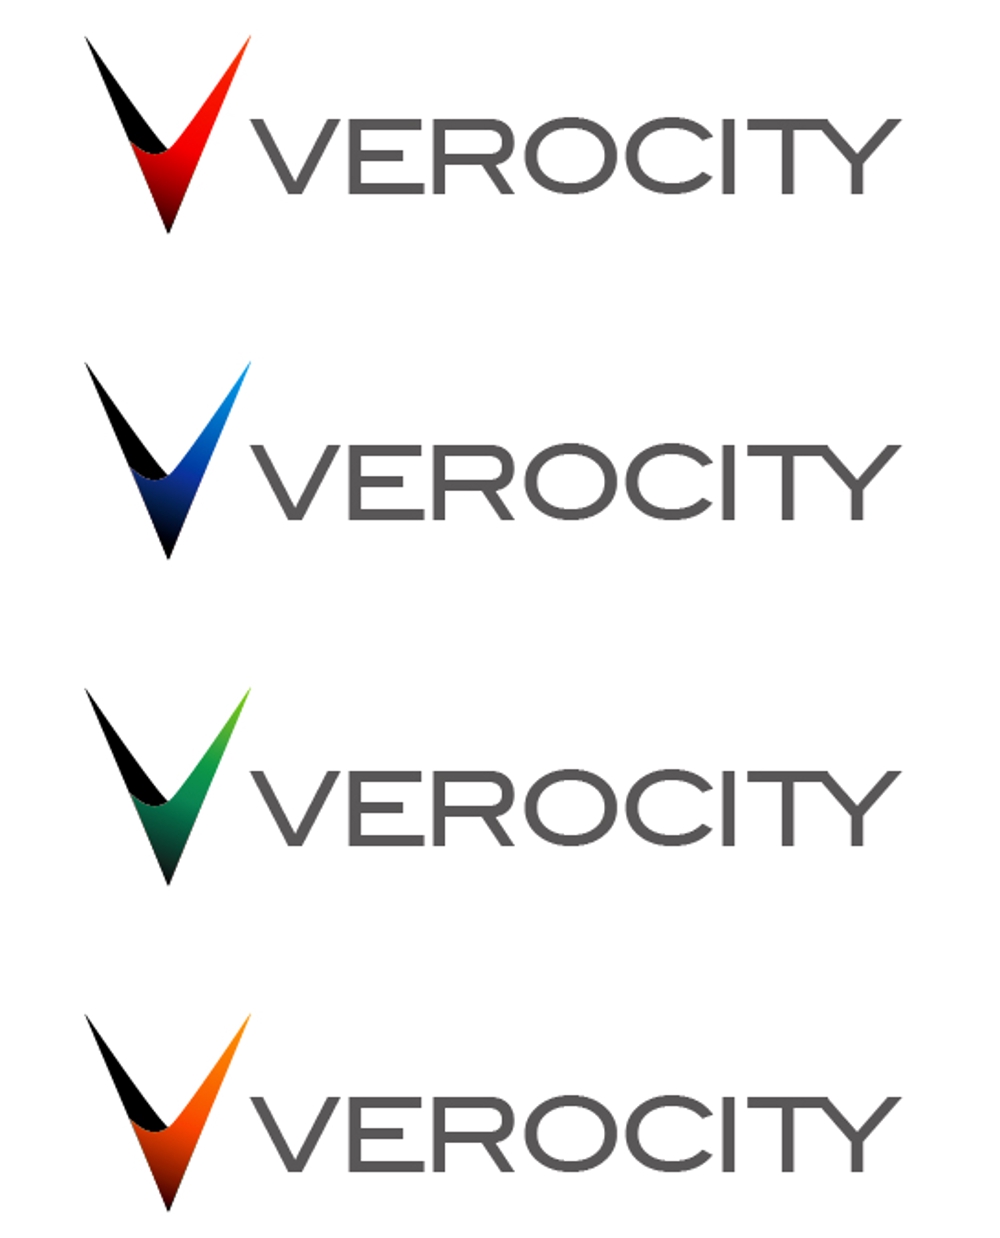 Verocity-kzsk2.jpg